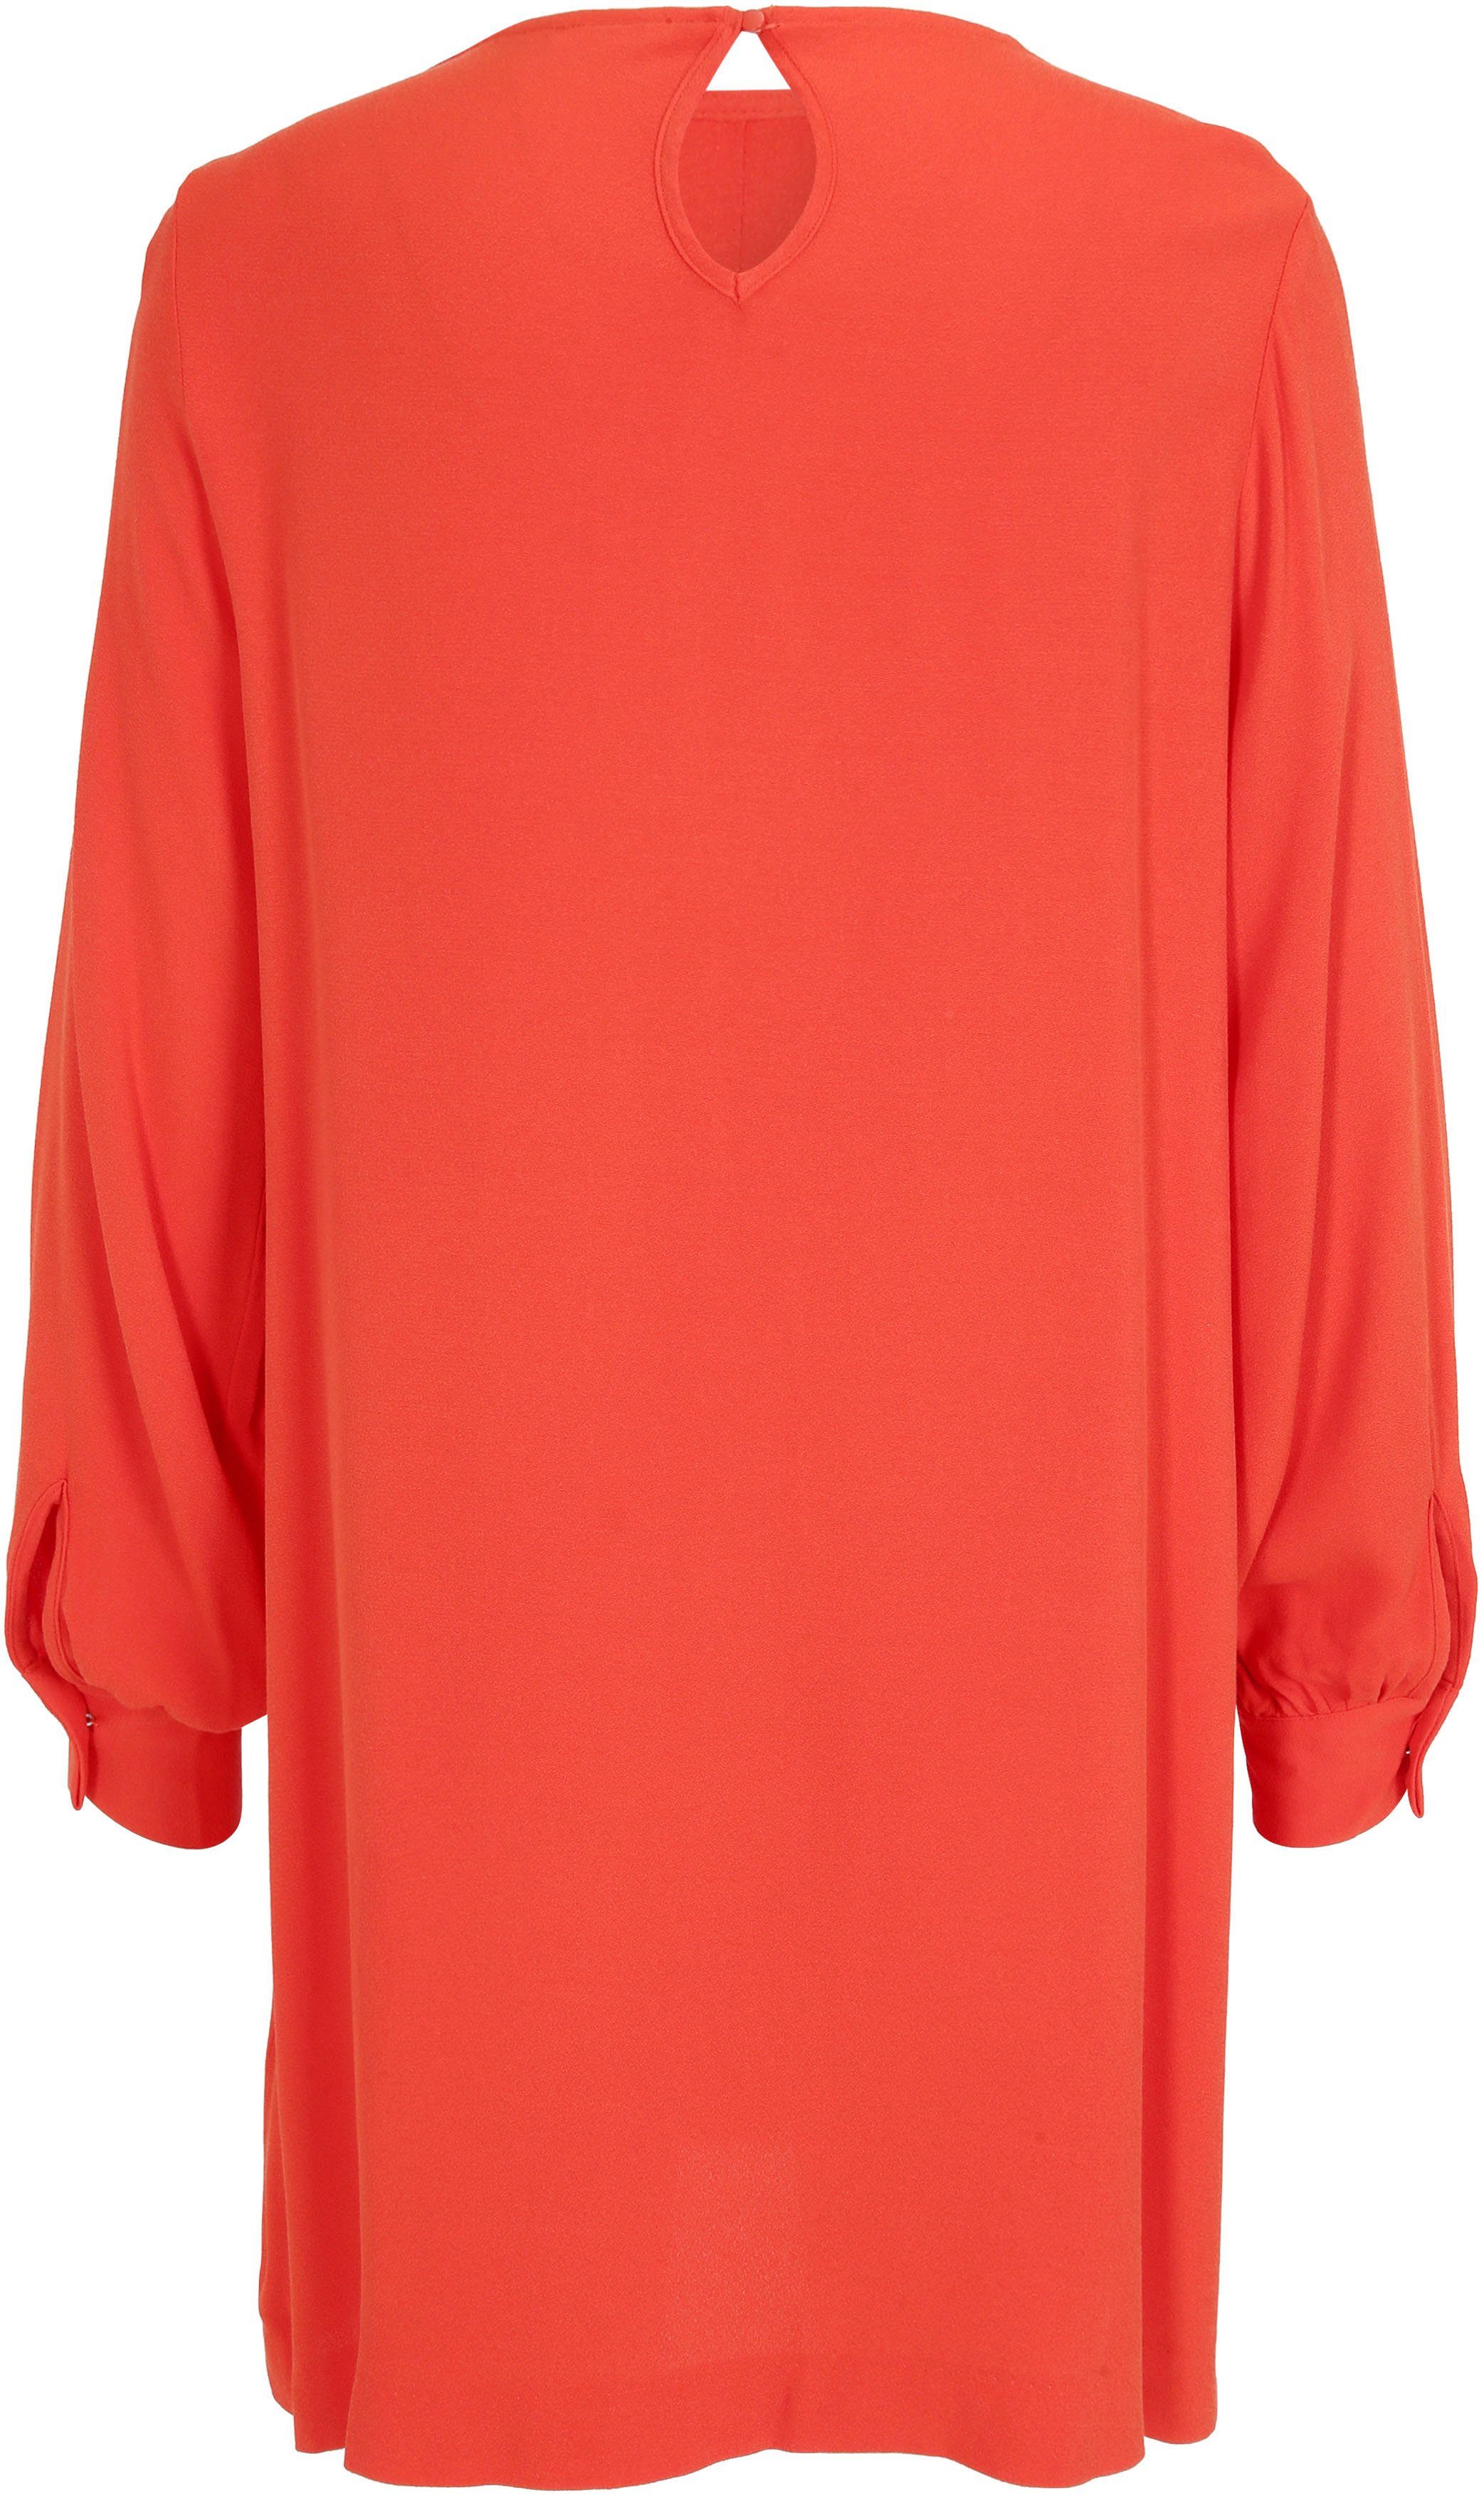 Tamaris A-Linien-Kleid NEUE KOLLEKTION red Rundhalsausschnitt- mit fiery